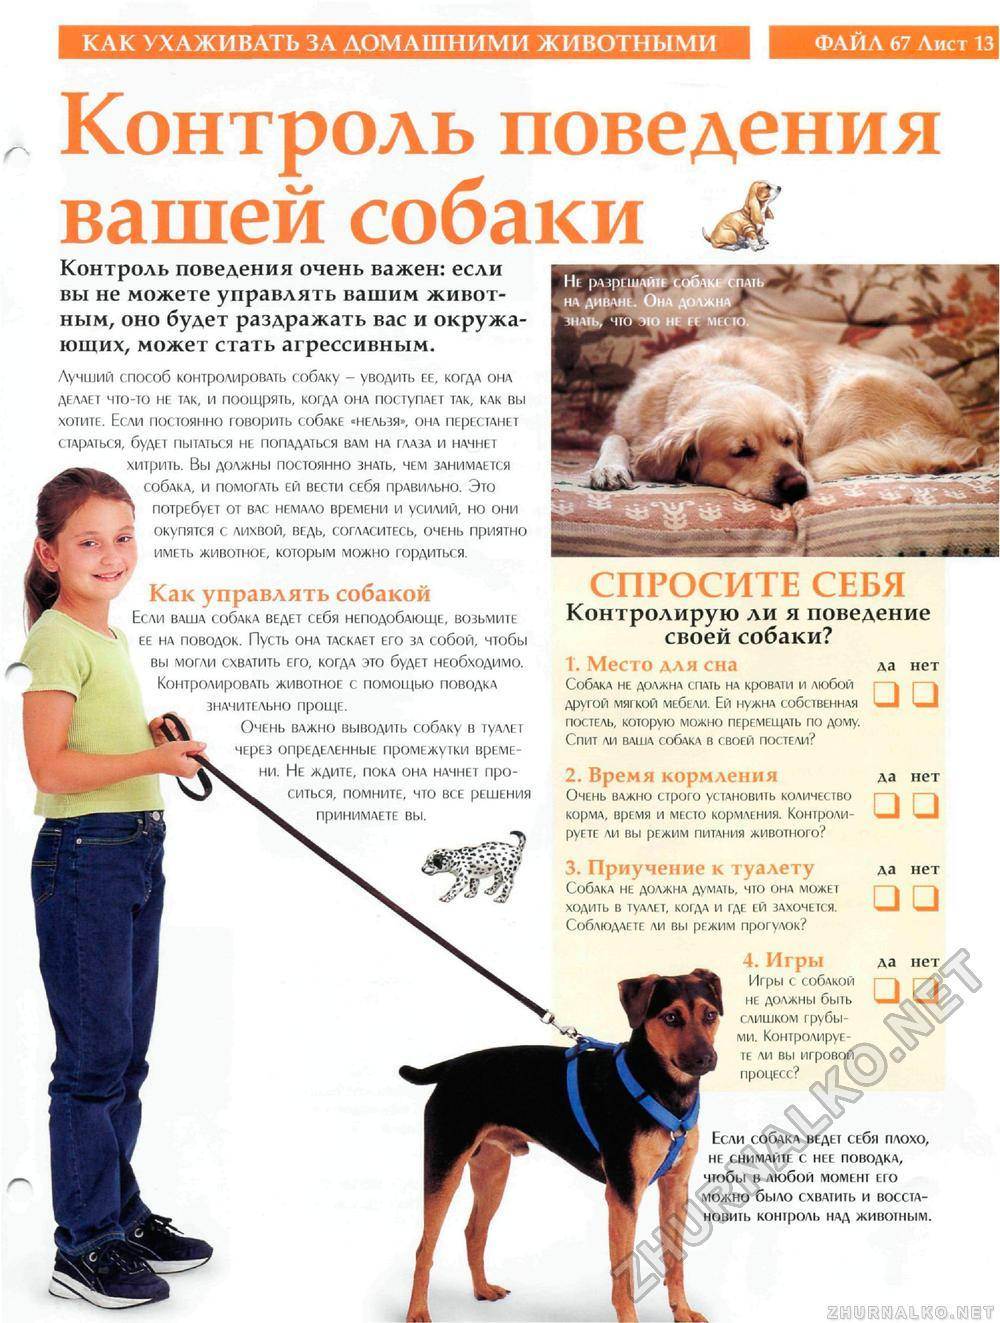 Советы ветеринара по домашнему и уличному содержанию собак. как правильно содержать собаку в доме, на улице, купать, кормить, ухаживать за шерстью, как определить, не болеет ли собака?